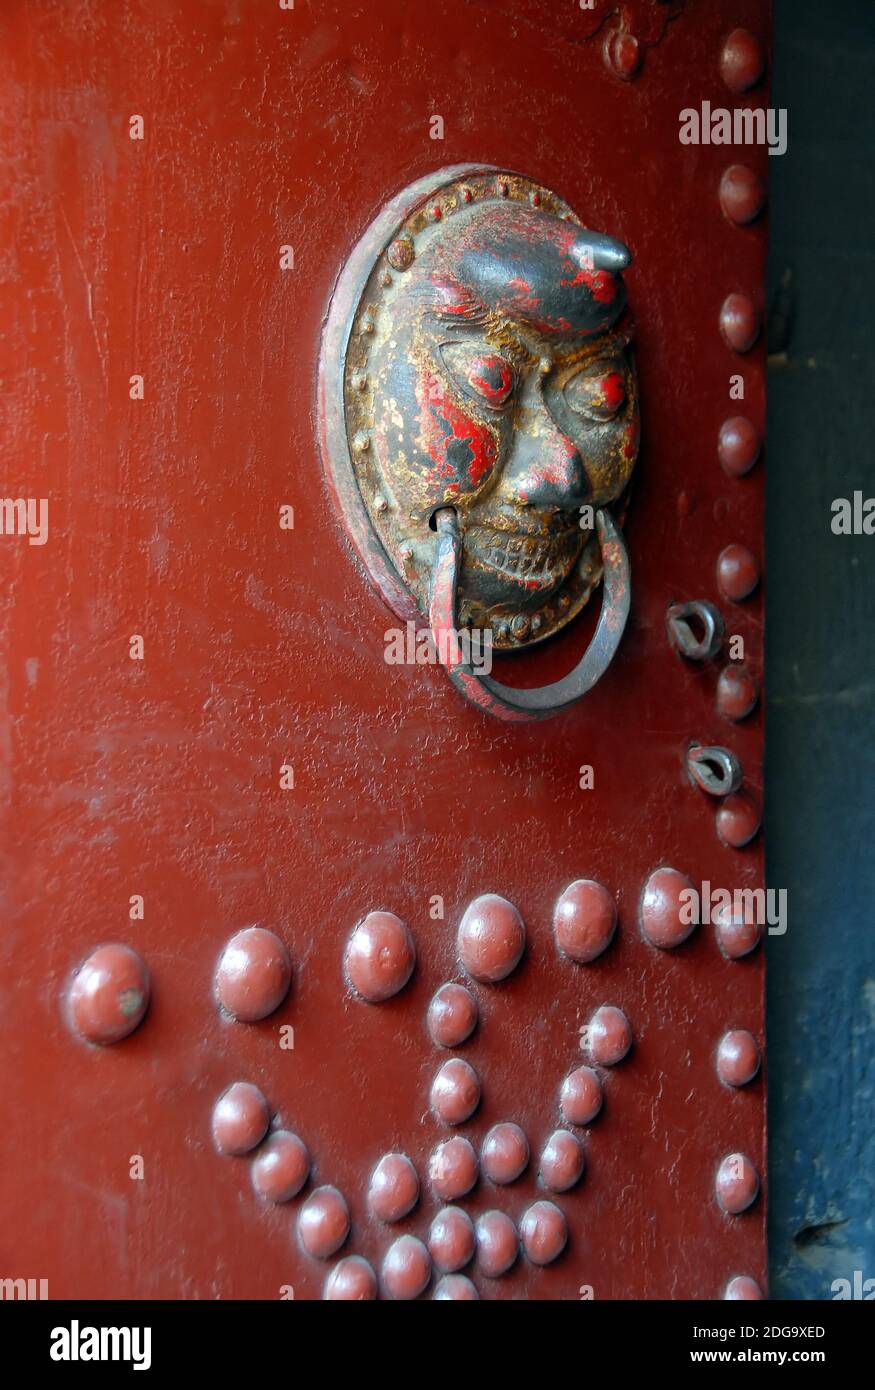 Le Temple suspendu ou Monastère suspendu près de Datong dans la province du Shanxi, en Chine. Détail d'une porte rouge au temple suspendu. Banque D'Images